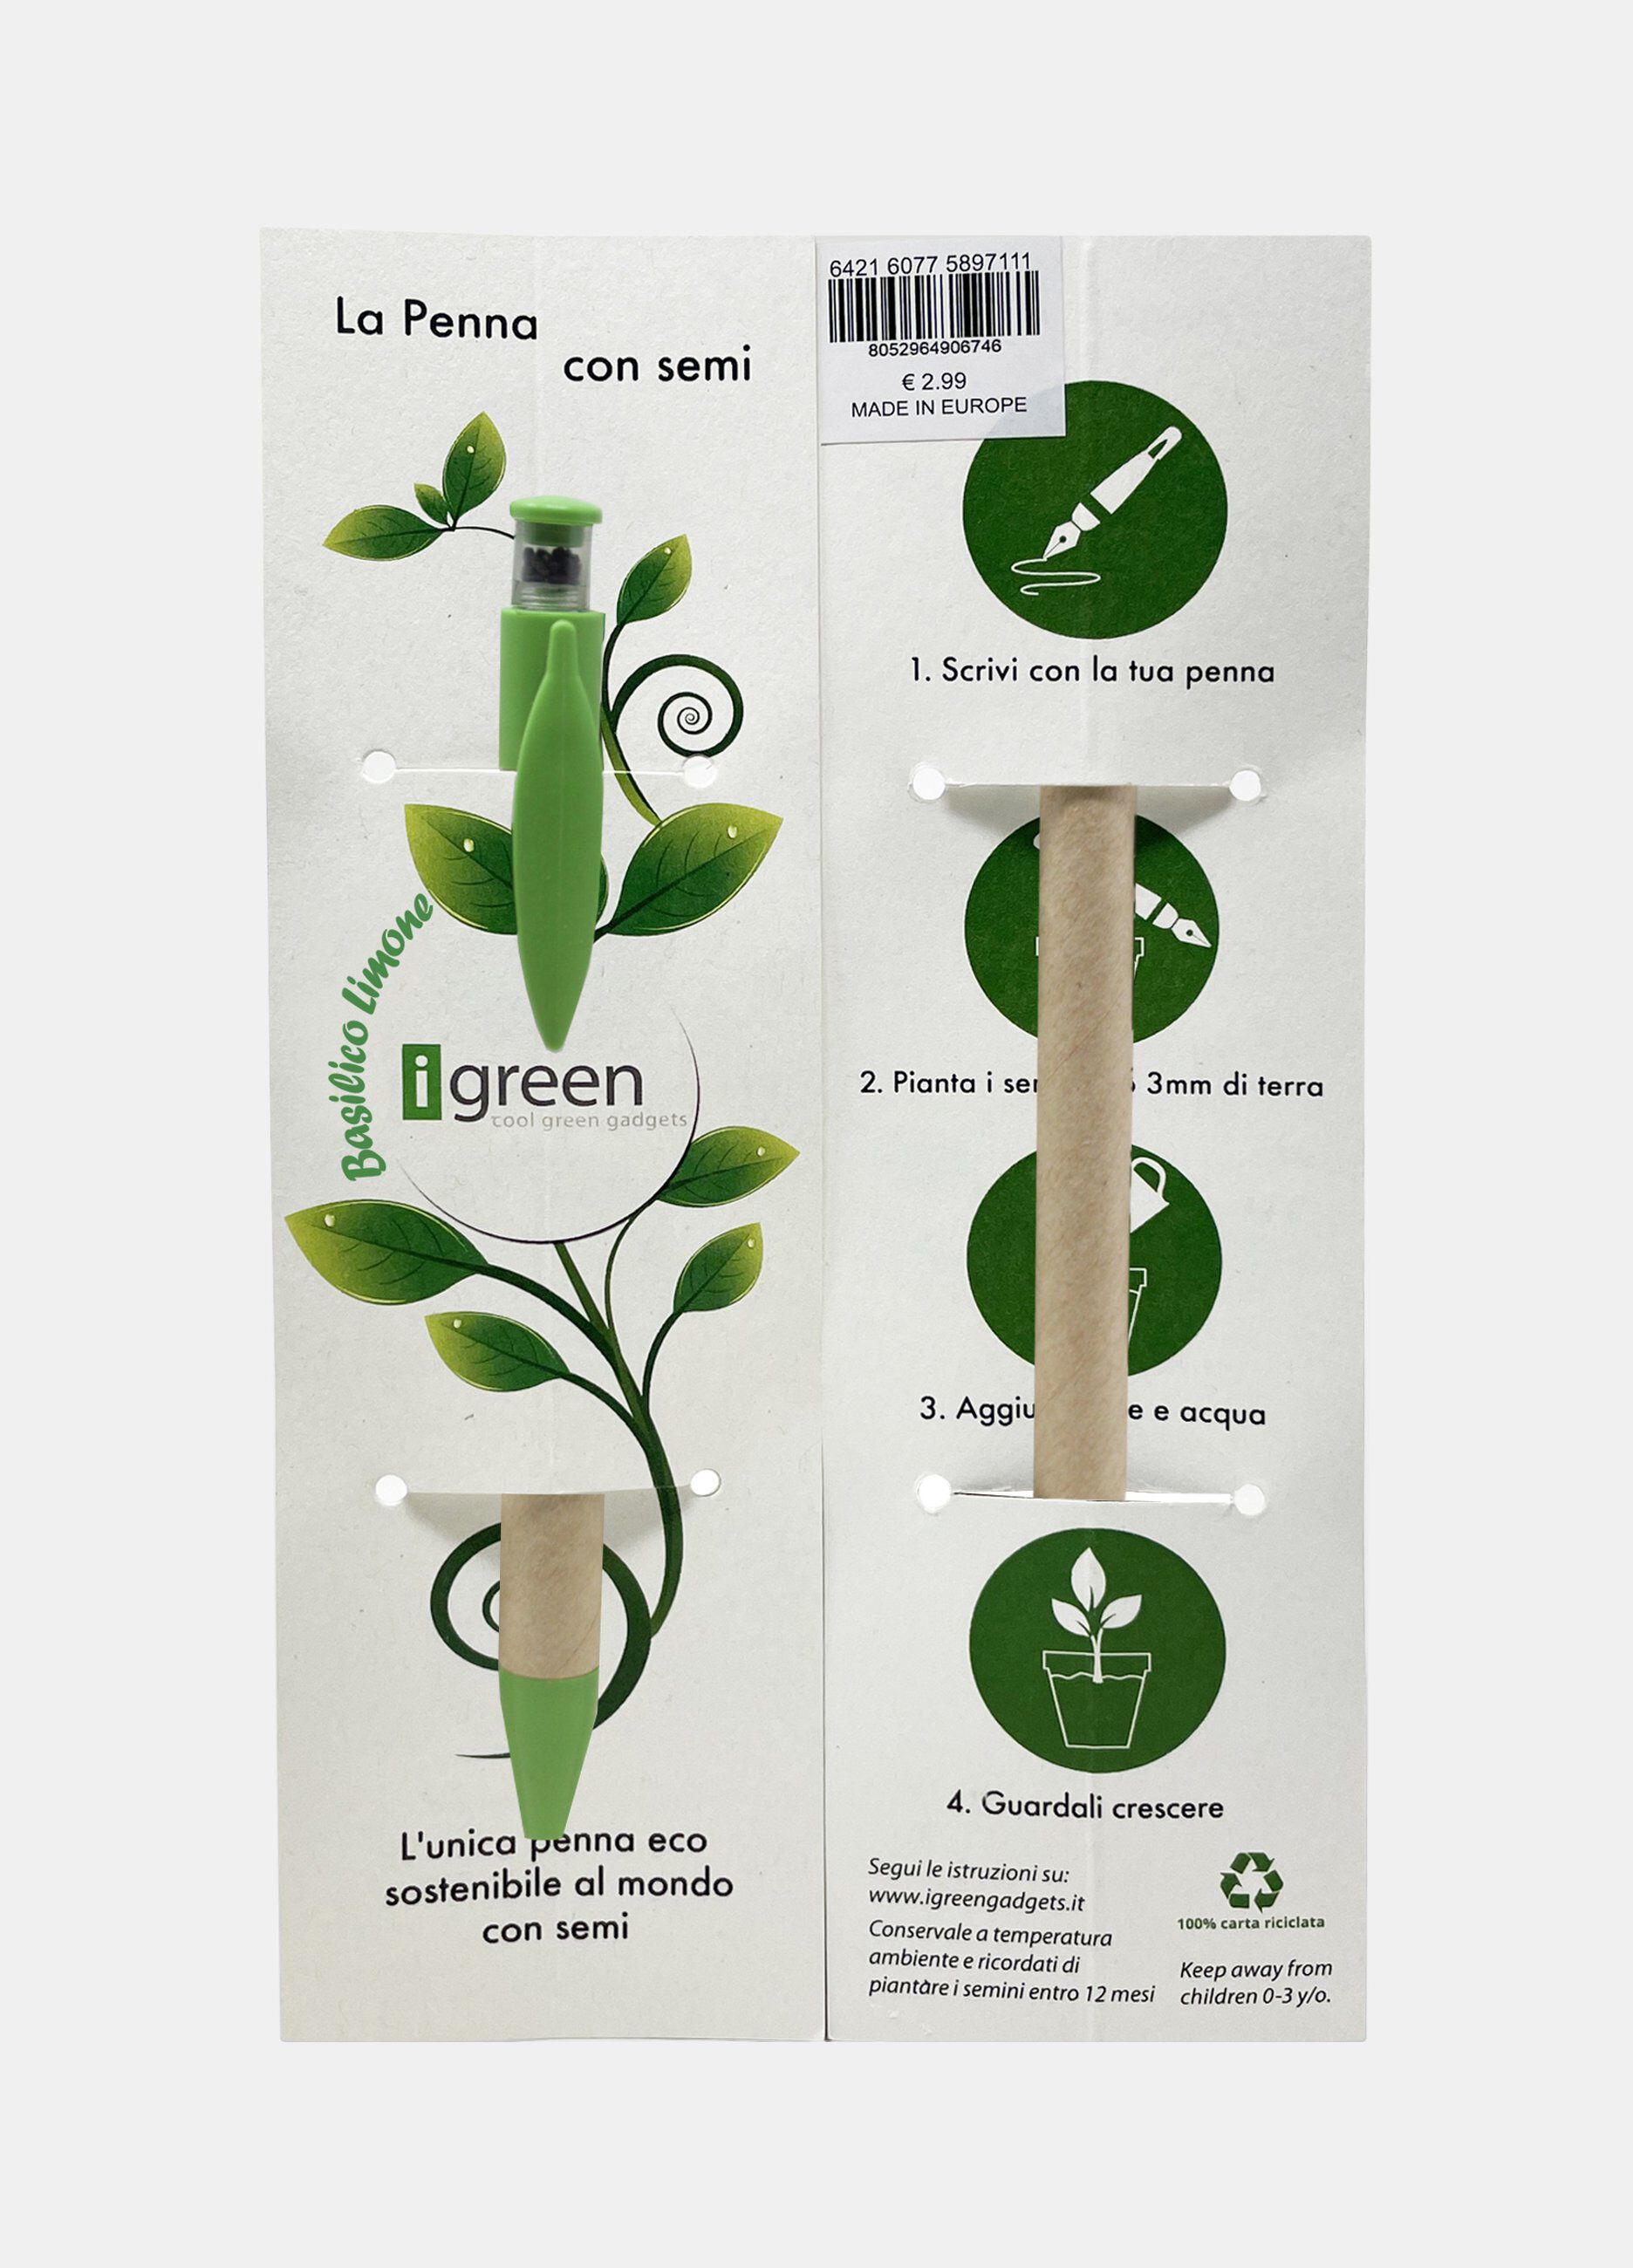 Penna I green ecosostenibile con semi Made in Italy